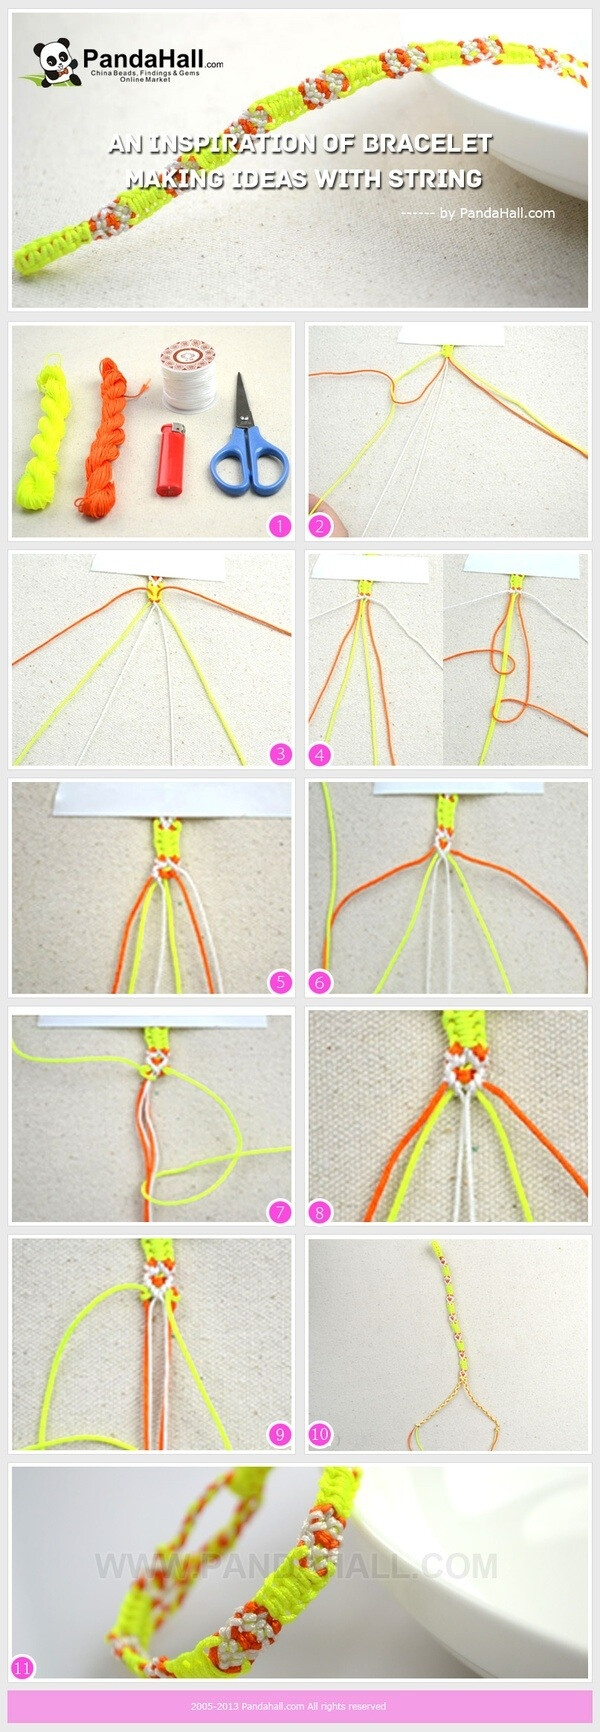 五色线编织手链教程图片